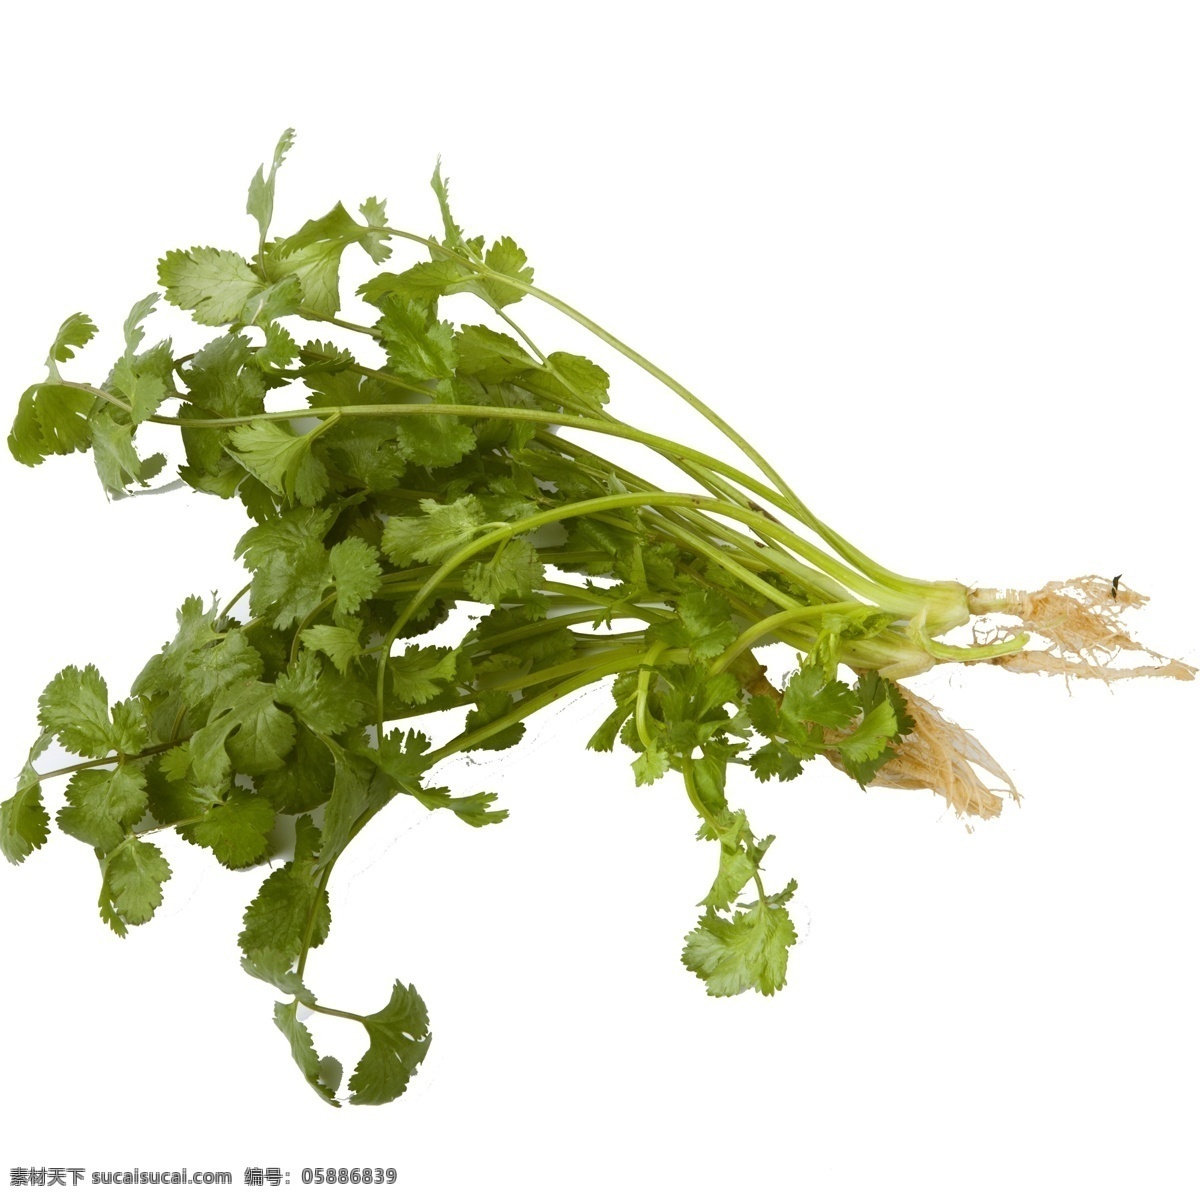 新鲜 蔬菜 佐料 免 抠 图 菜叶子 绿色的叶子 绿色植物 绿色生态 绿色生态蔬菜 美味 新鲜的蔬菜 免抠图